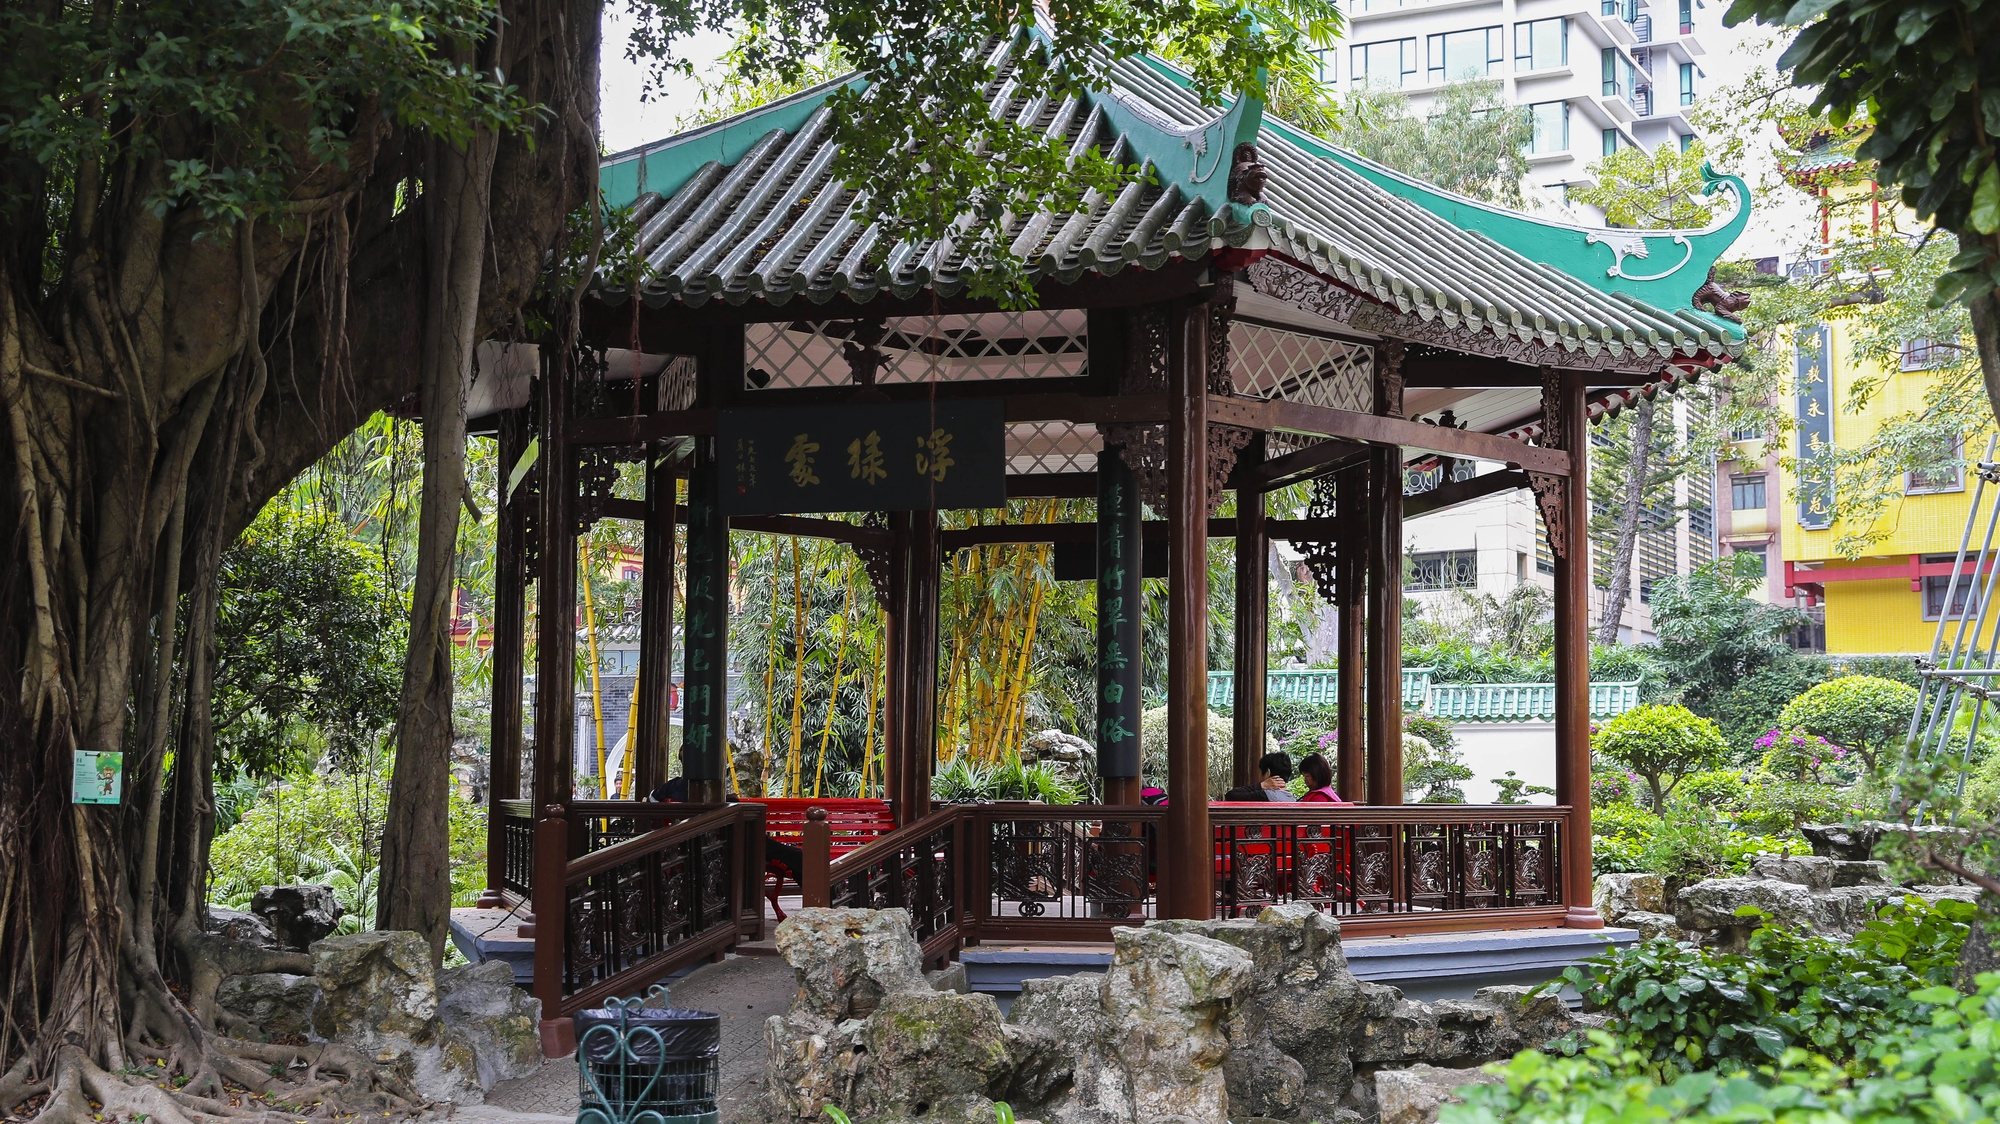 Jardim Lou Lim Loc em Macau, China.17 de dezembro de 2019. JOÃO RELVAS/LUSA